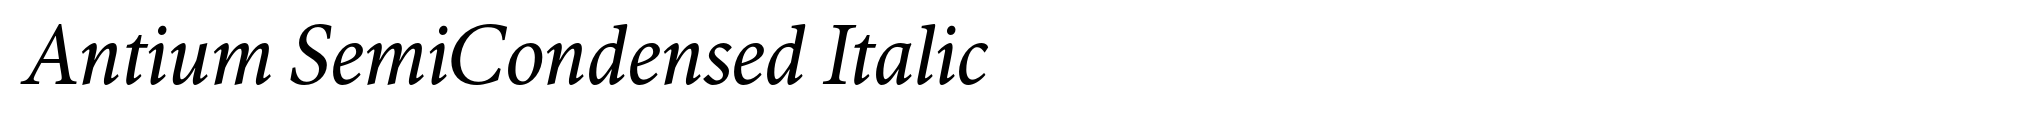 Antium SemiCondensed Italic image